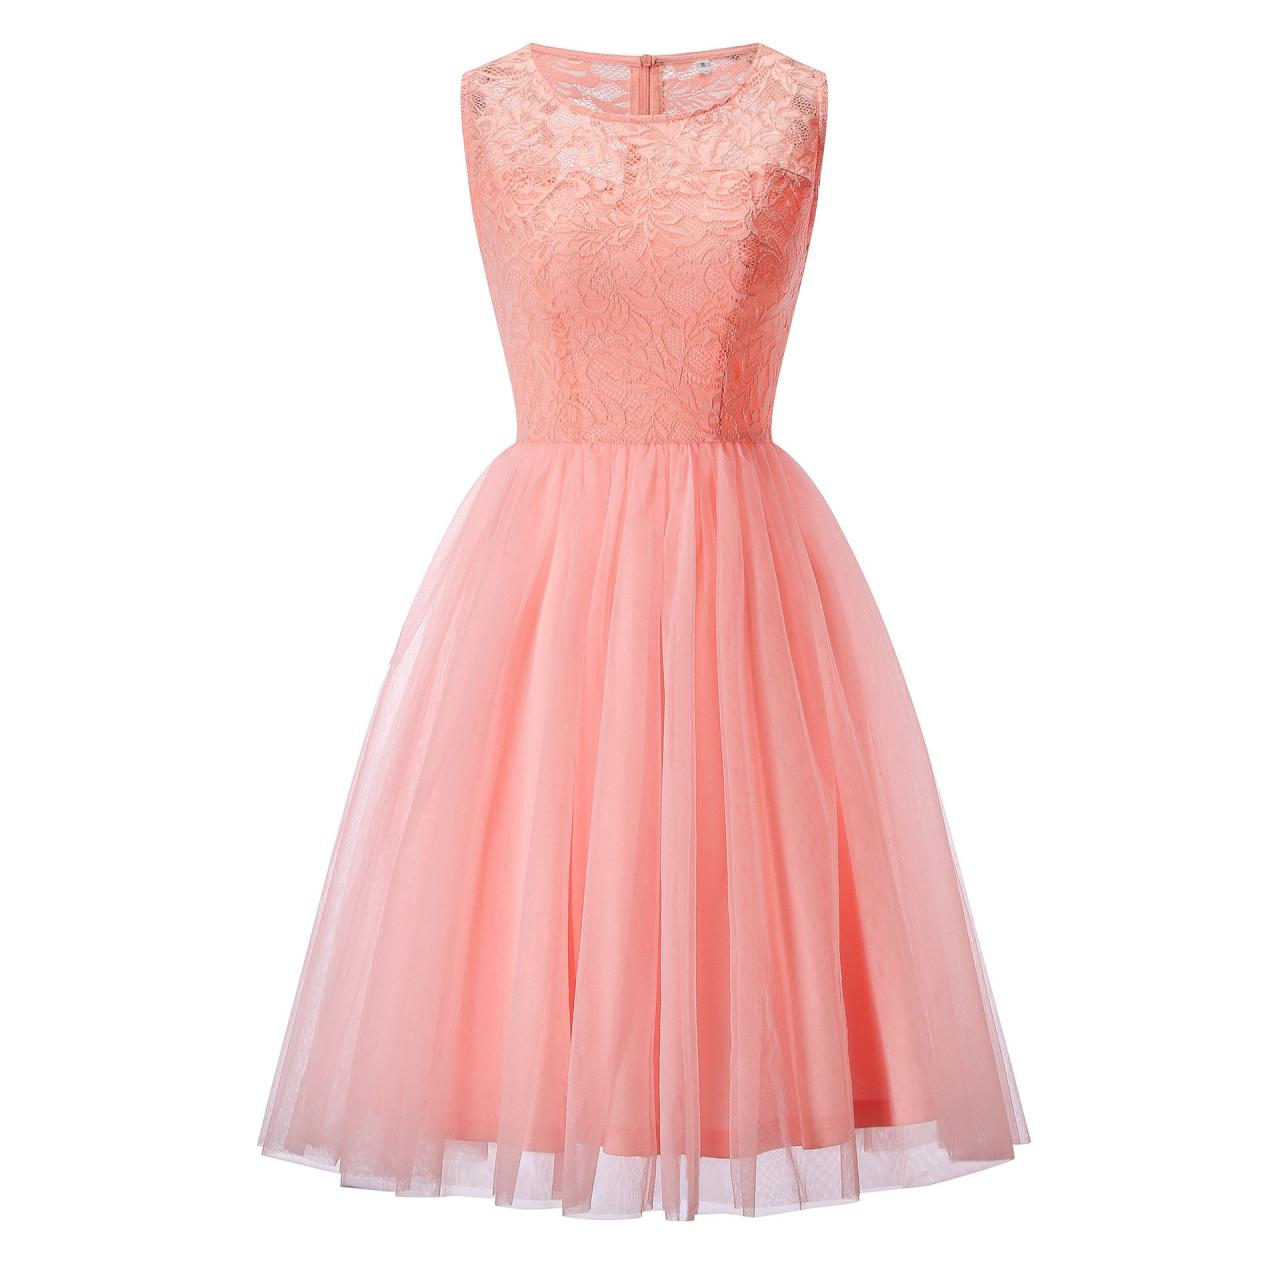 O Neck Sleeveless Lace Dress - Pink